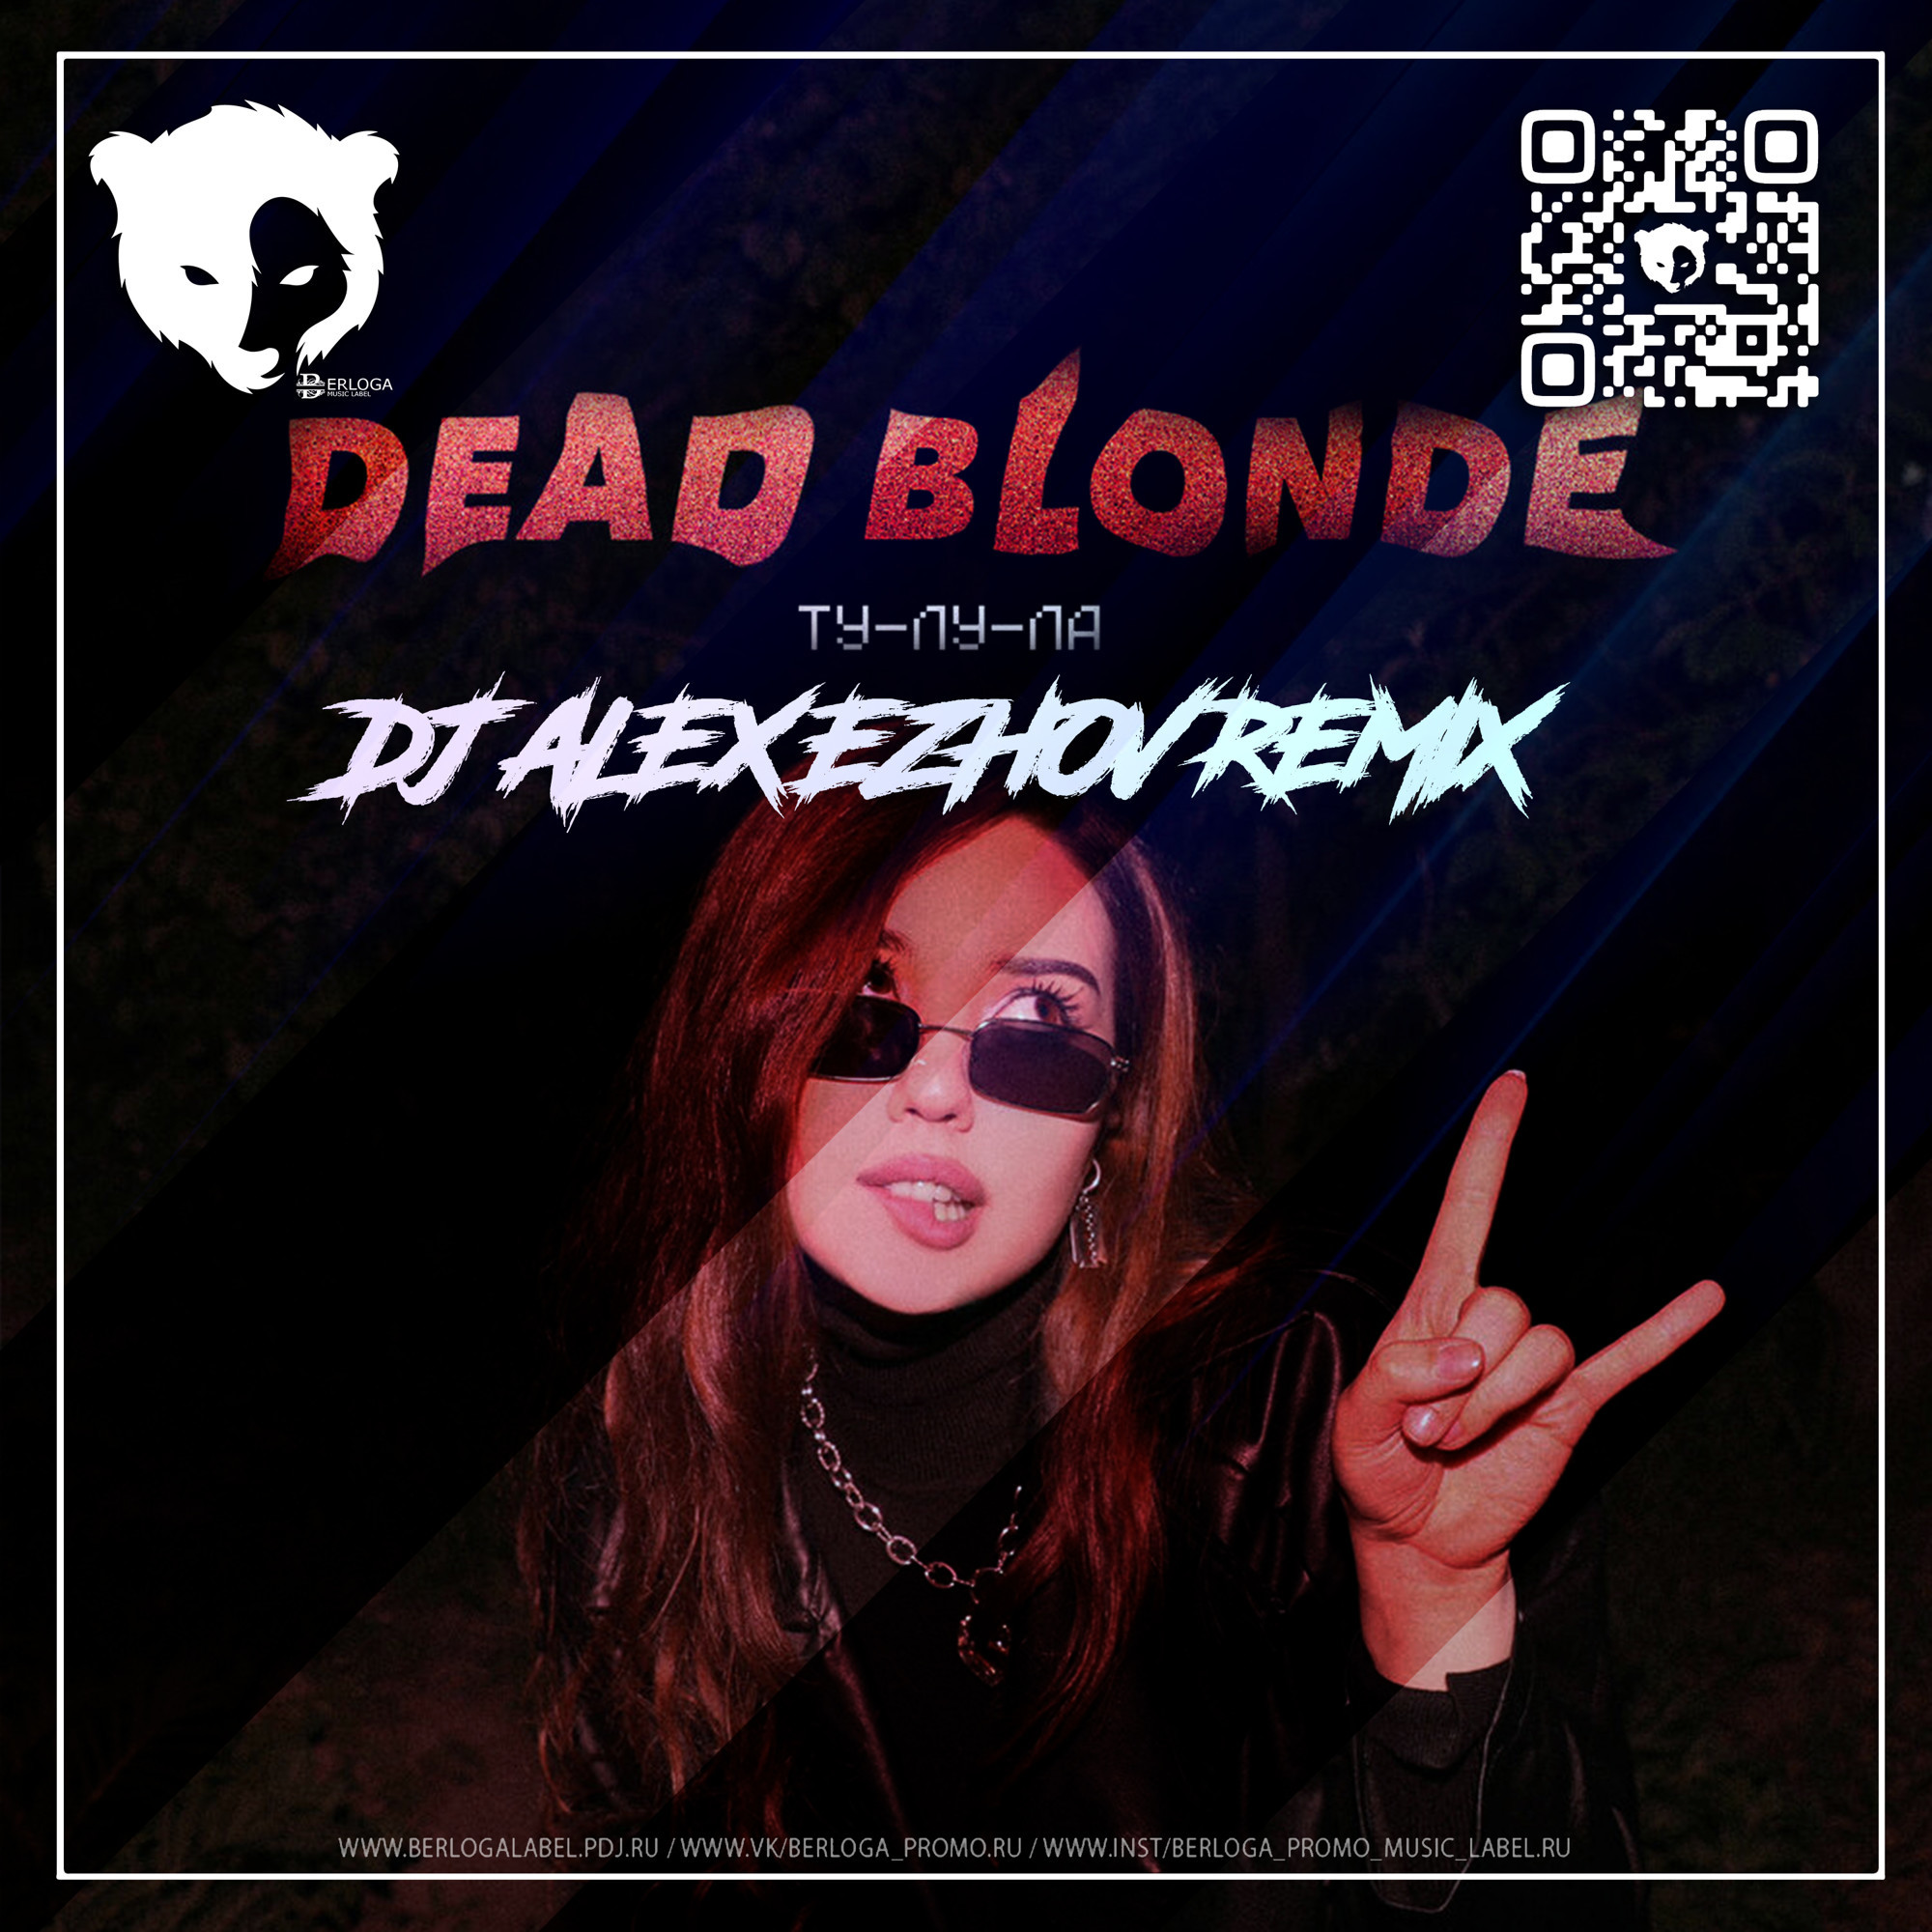 Blonde ту лу. Чичерина ту-Лу-ла (DJ Shtopor Remix). Dead blonde Бесприданница. Ту-Лу-ла Dead blonde обложка трека. DJ la.